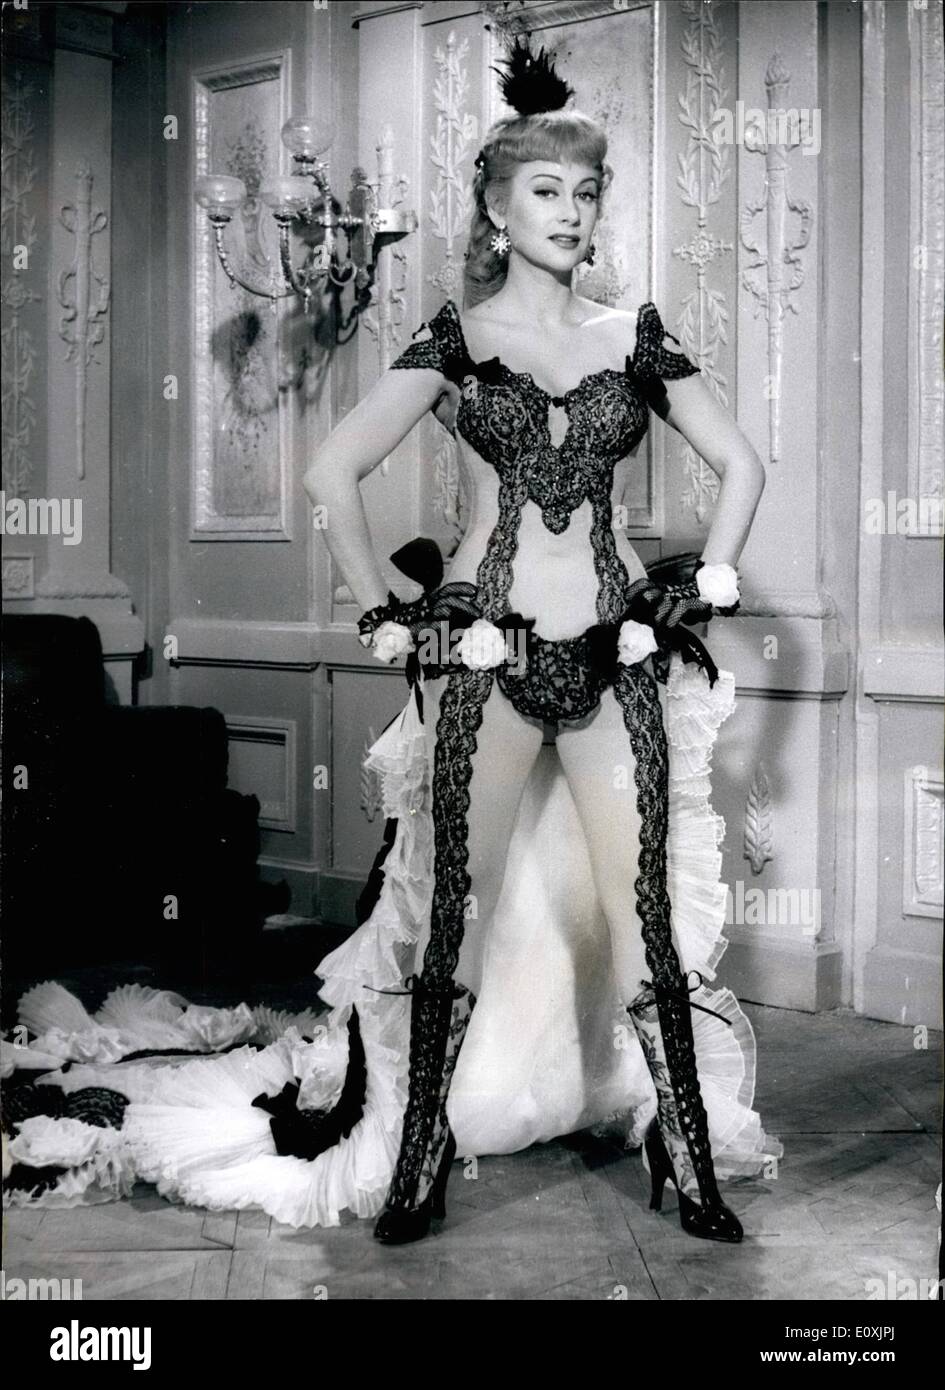 02 février 1967 - Carol Marine mort. : Film star Martine Carol, qui a été retrouvé mort aujourd'hui à sa suite à l'Hôtel de Paris à Monte Carlo, est vu dans ce stock photo, portant des collants dentelle dans le film ''Nana' Banque D'Images